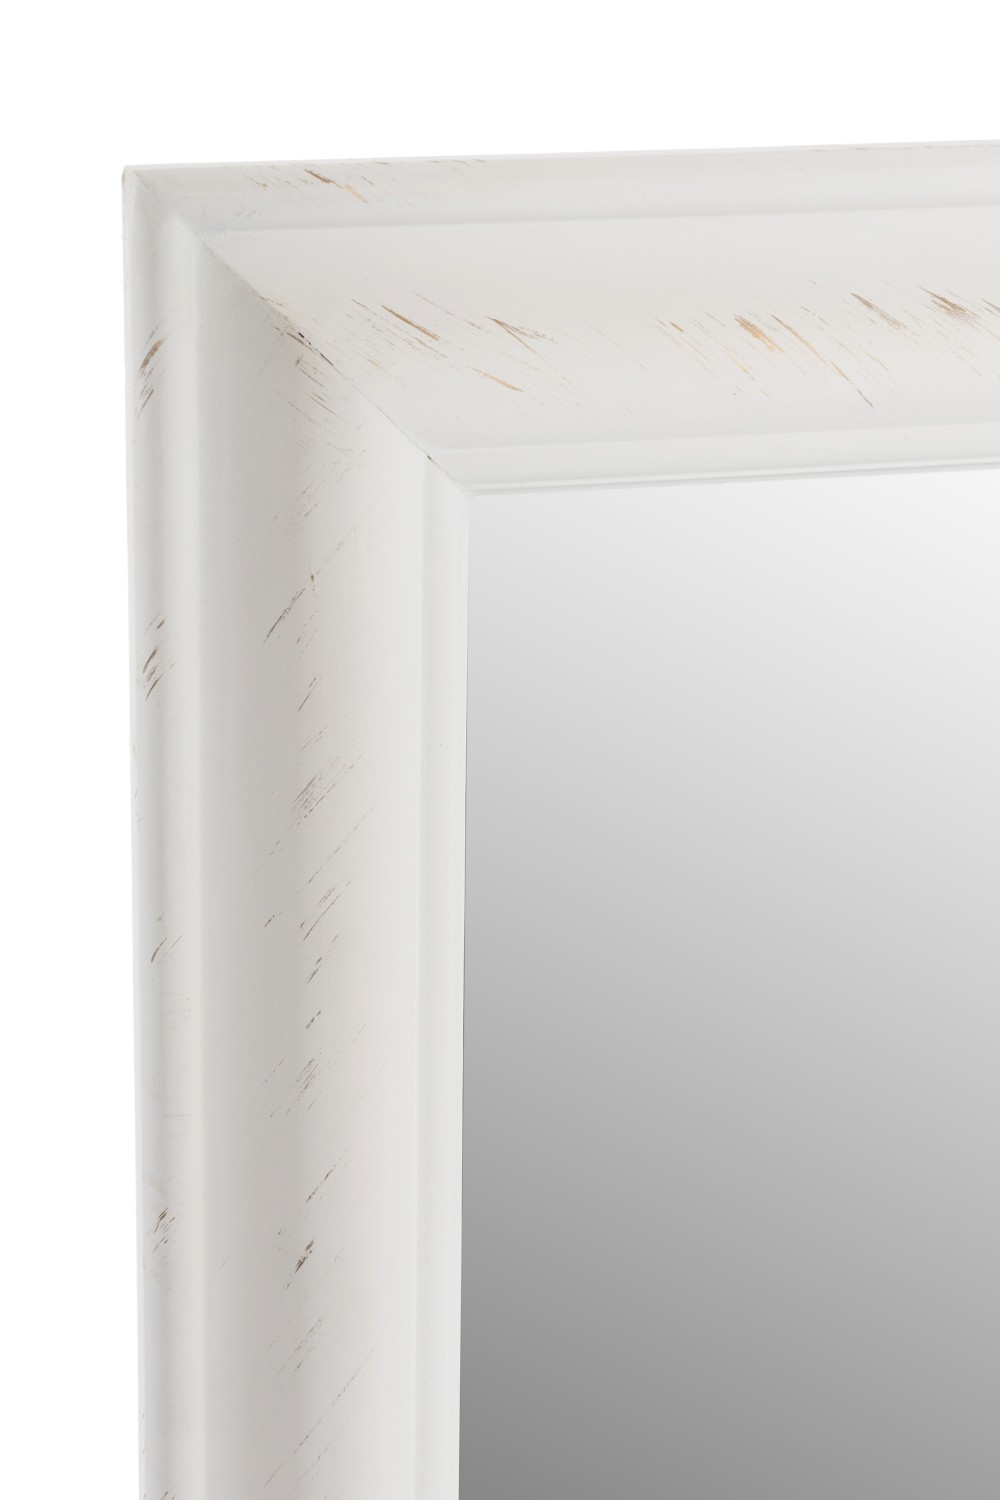 Spiegel Asil VI, weiß - 72x162 cm